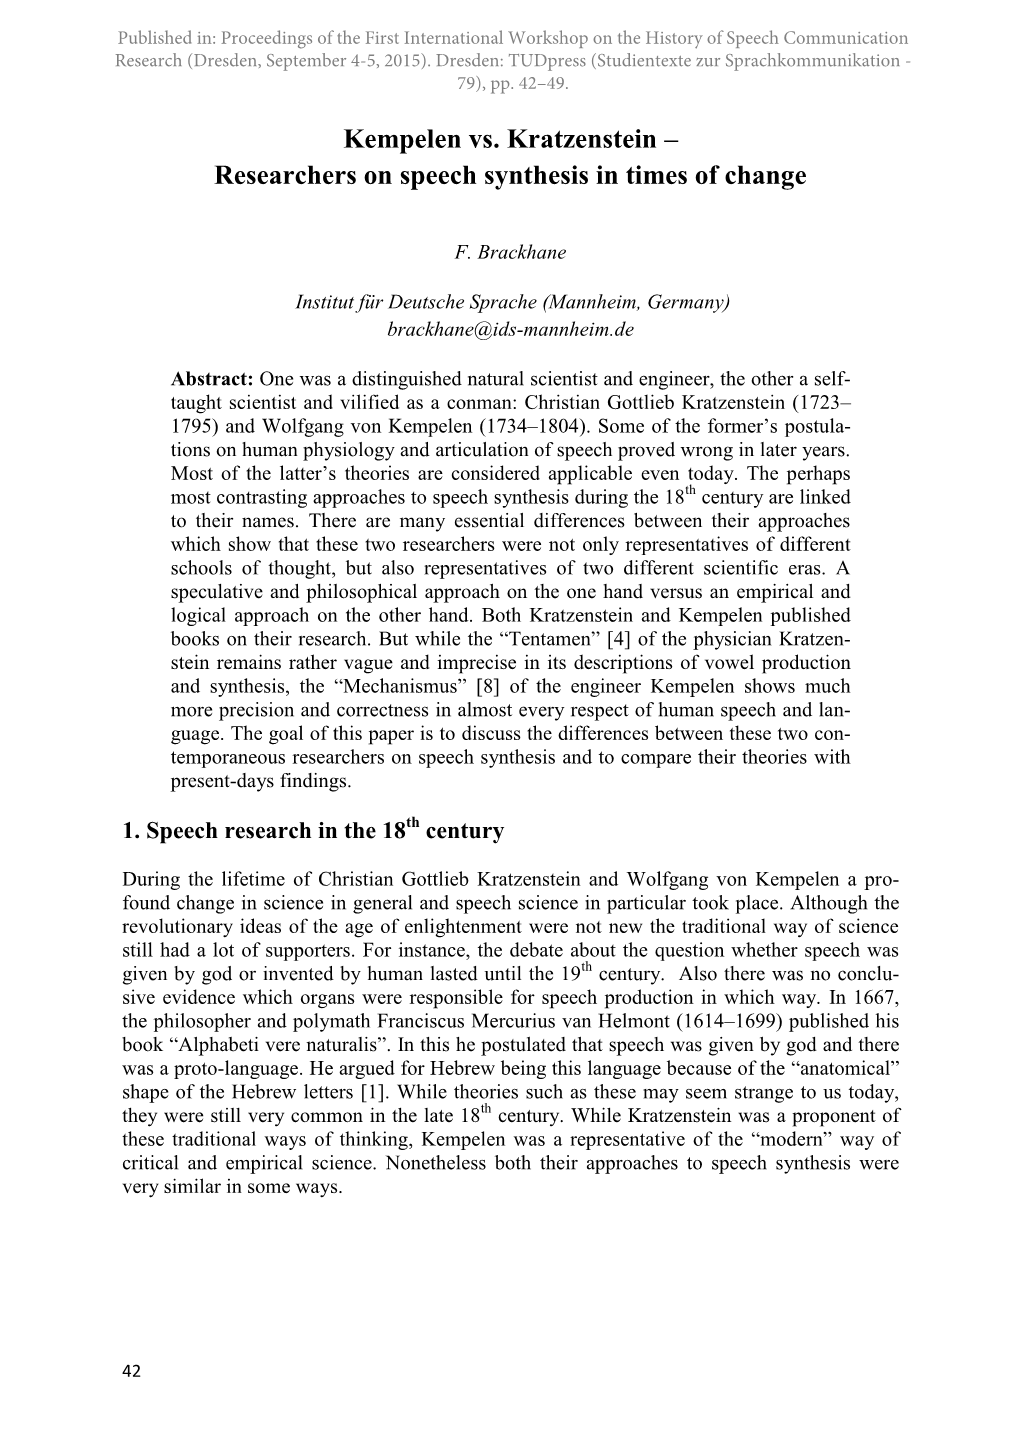 Kempelen Vs. Kratzenstein – Researchers on Speech Synthesis in Times of Change